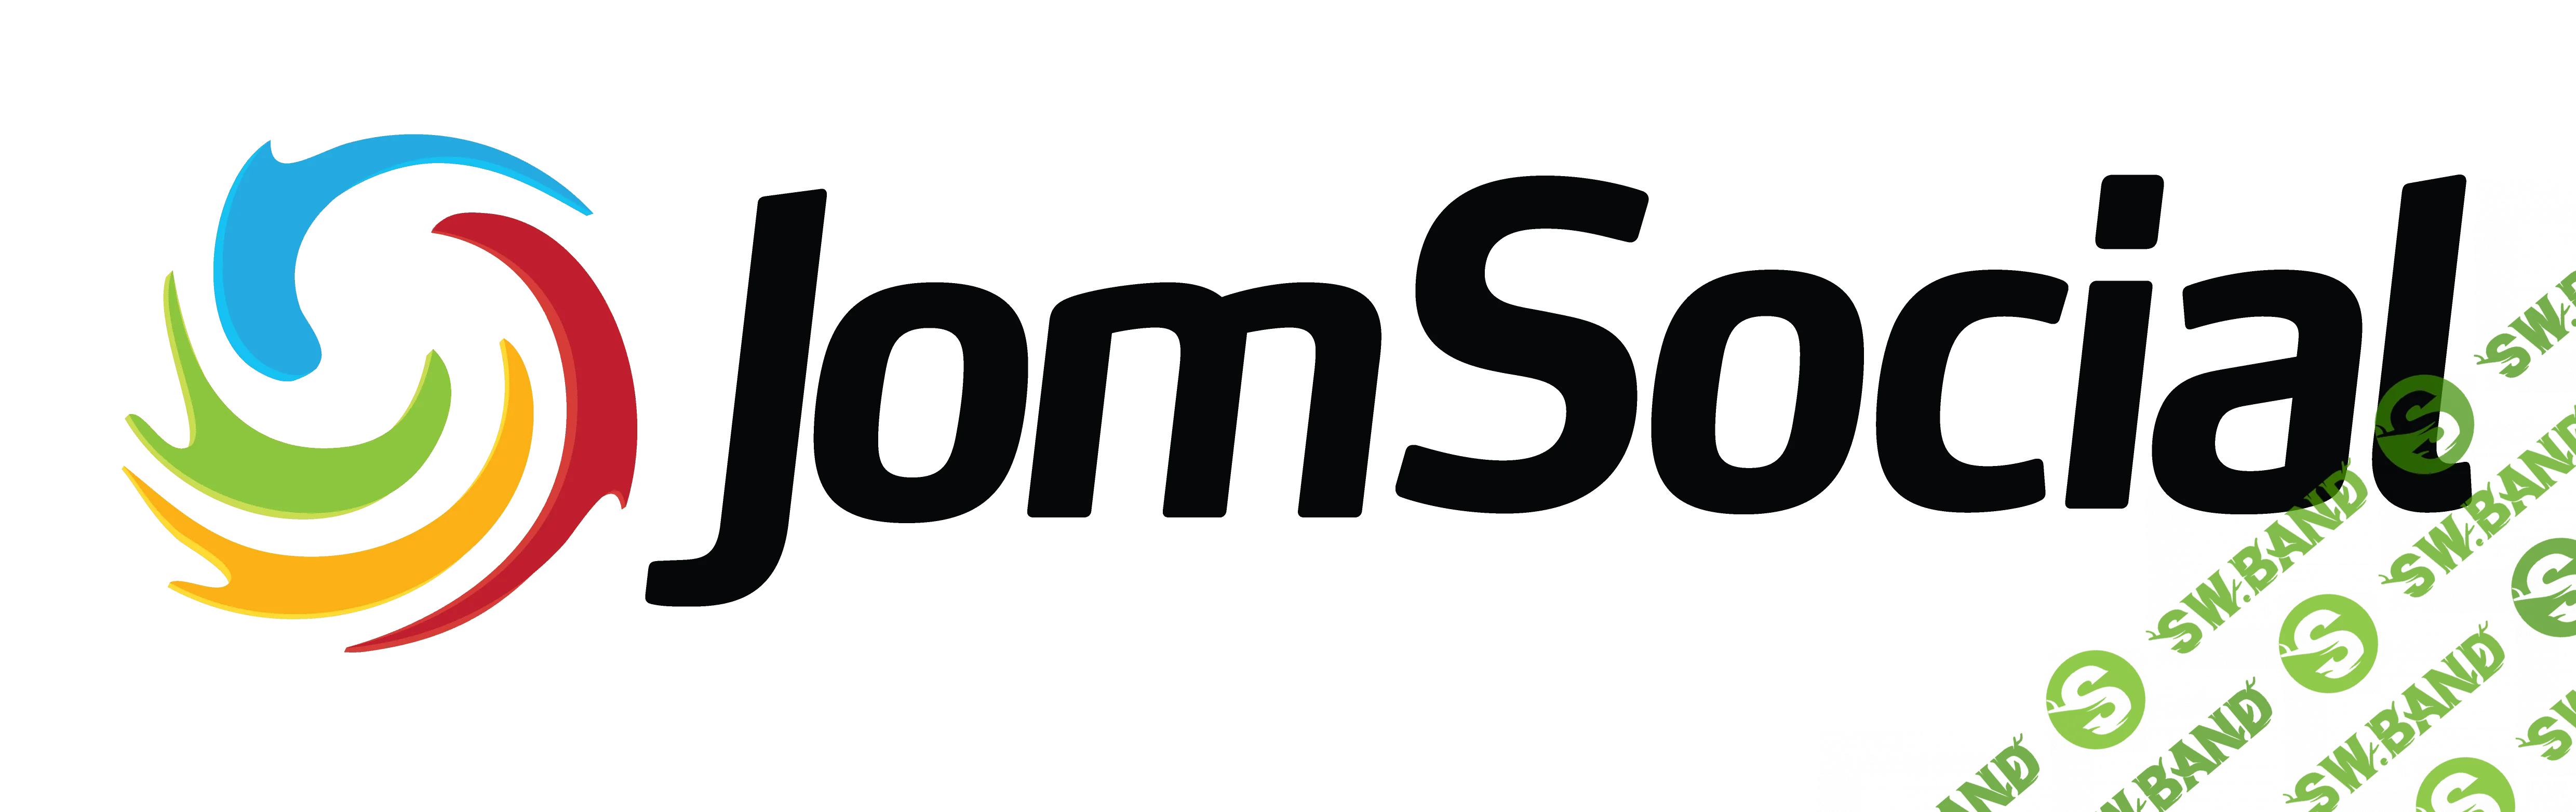 JomSocial PRO v4.5.8 - компонент социальной сети для Joomla